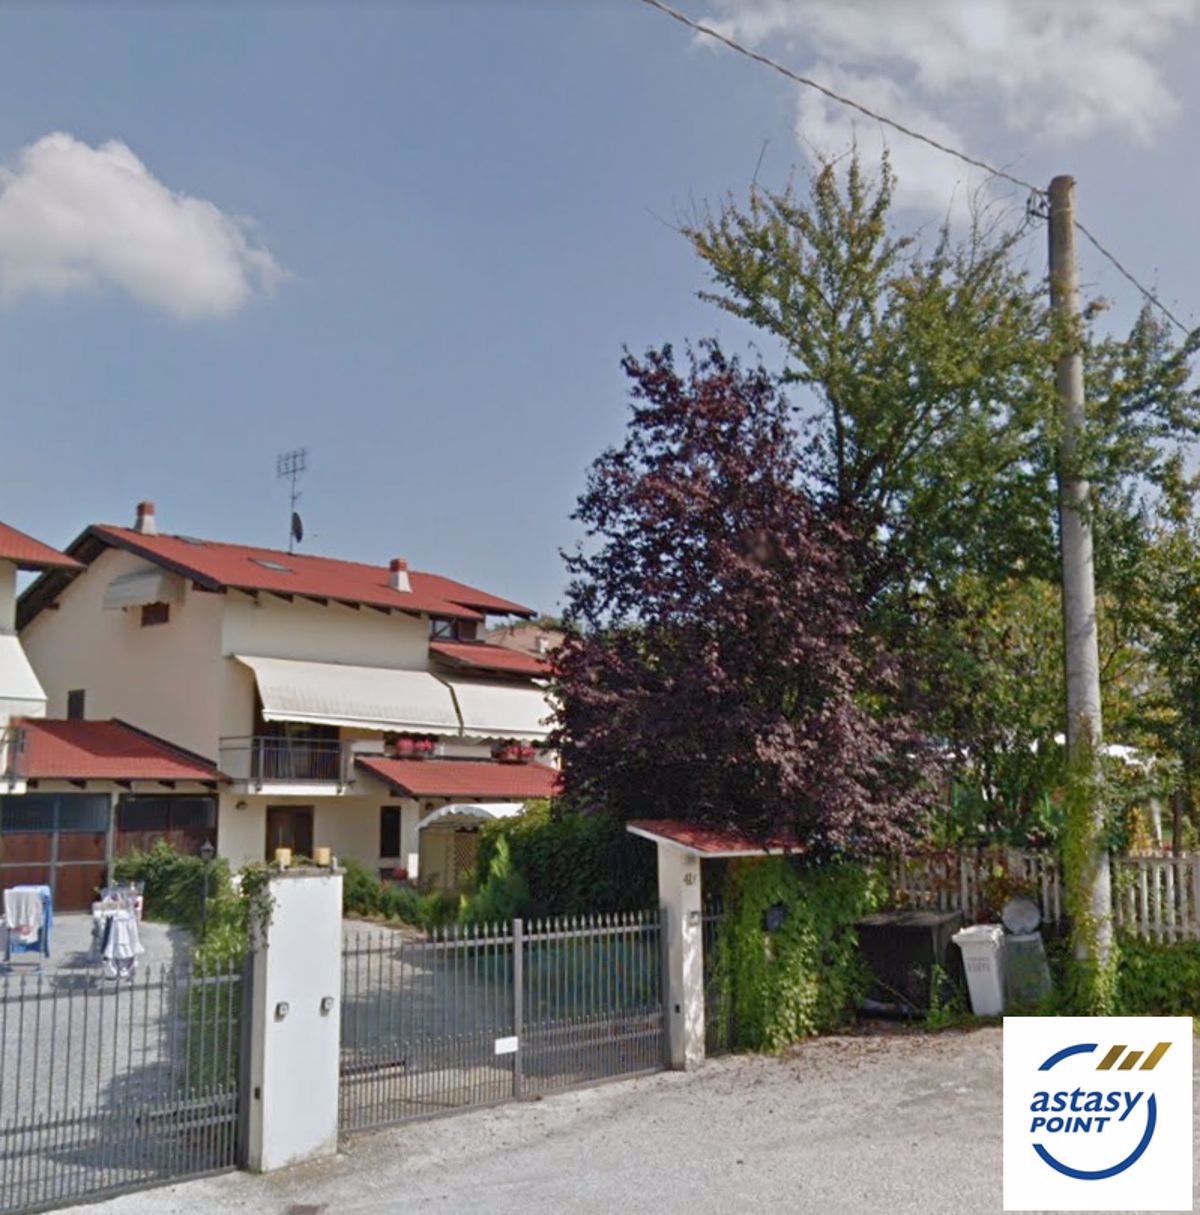 Villa a Schiera in vendita a Pocapaglia, 5 locali, prezzo € 120.000 | PortaleAgenzieImmobiliari.it